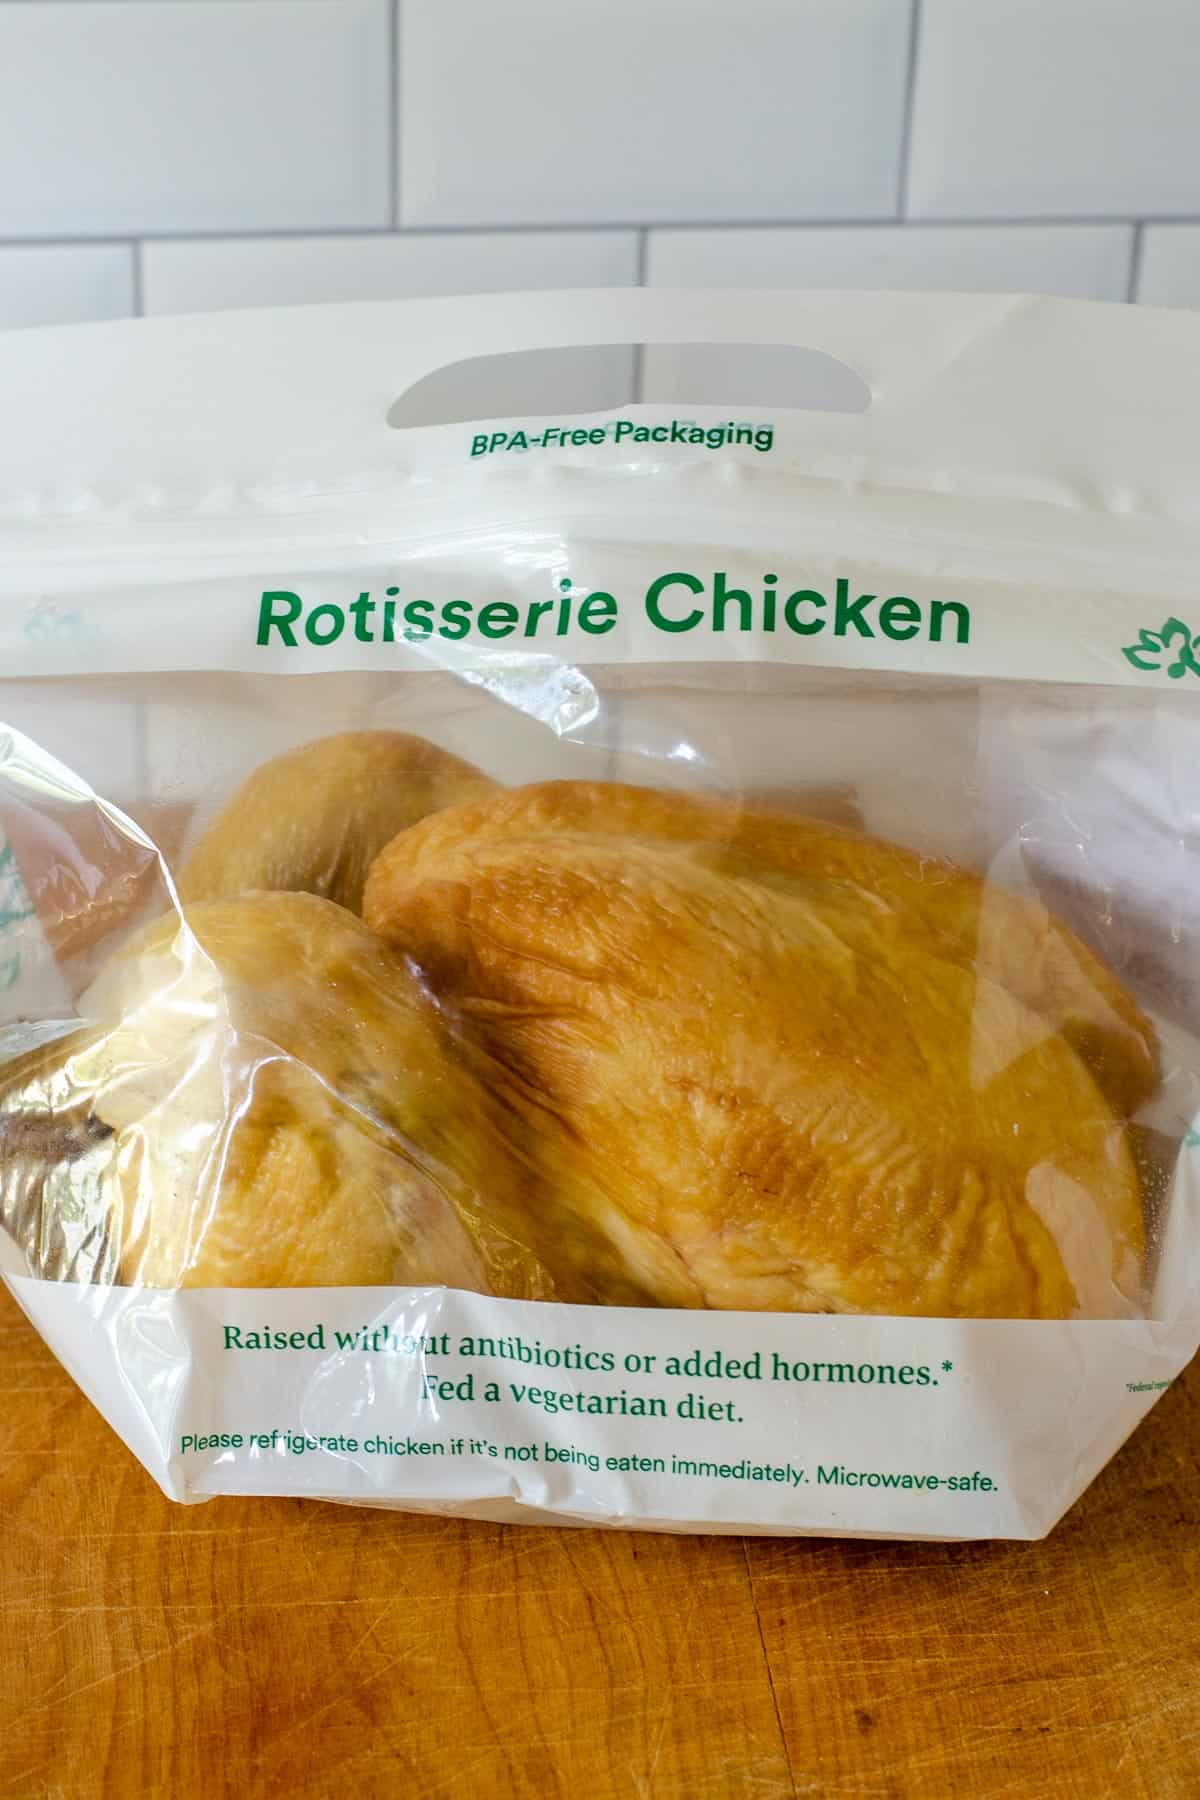 Rotisserie chicken in package